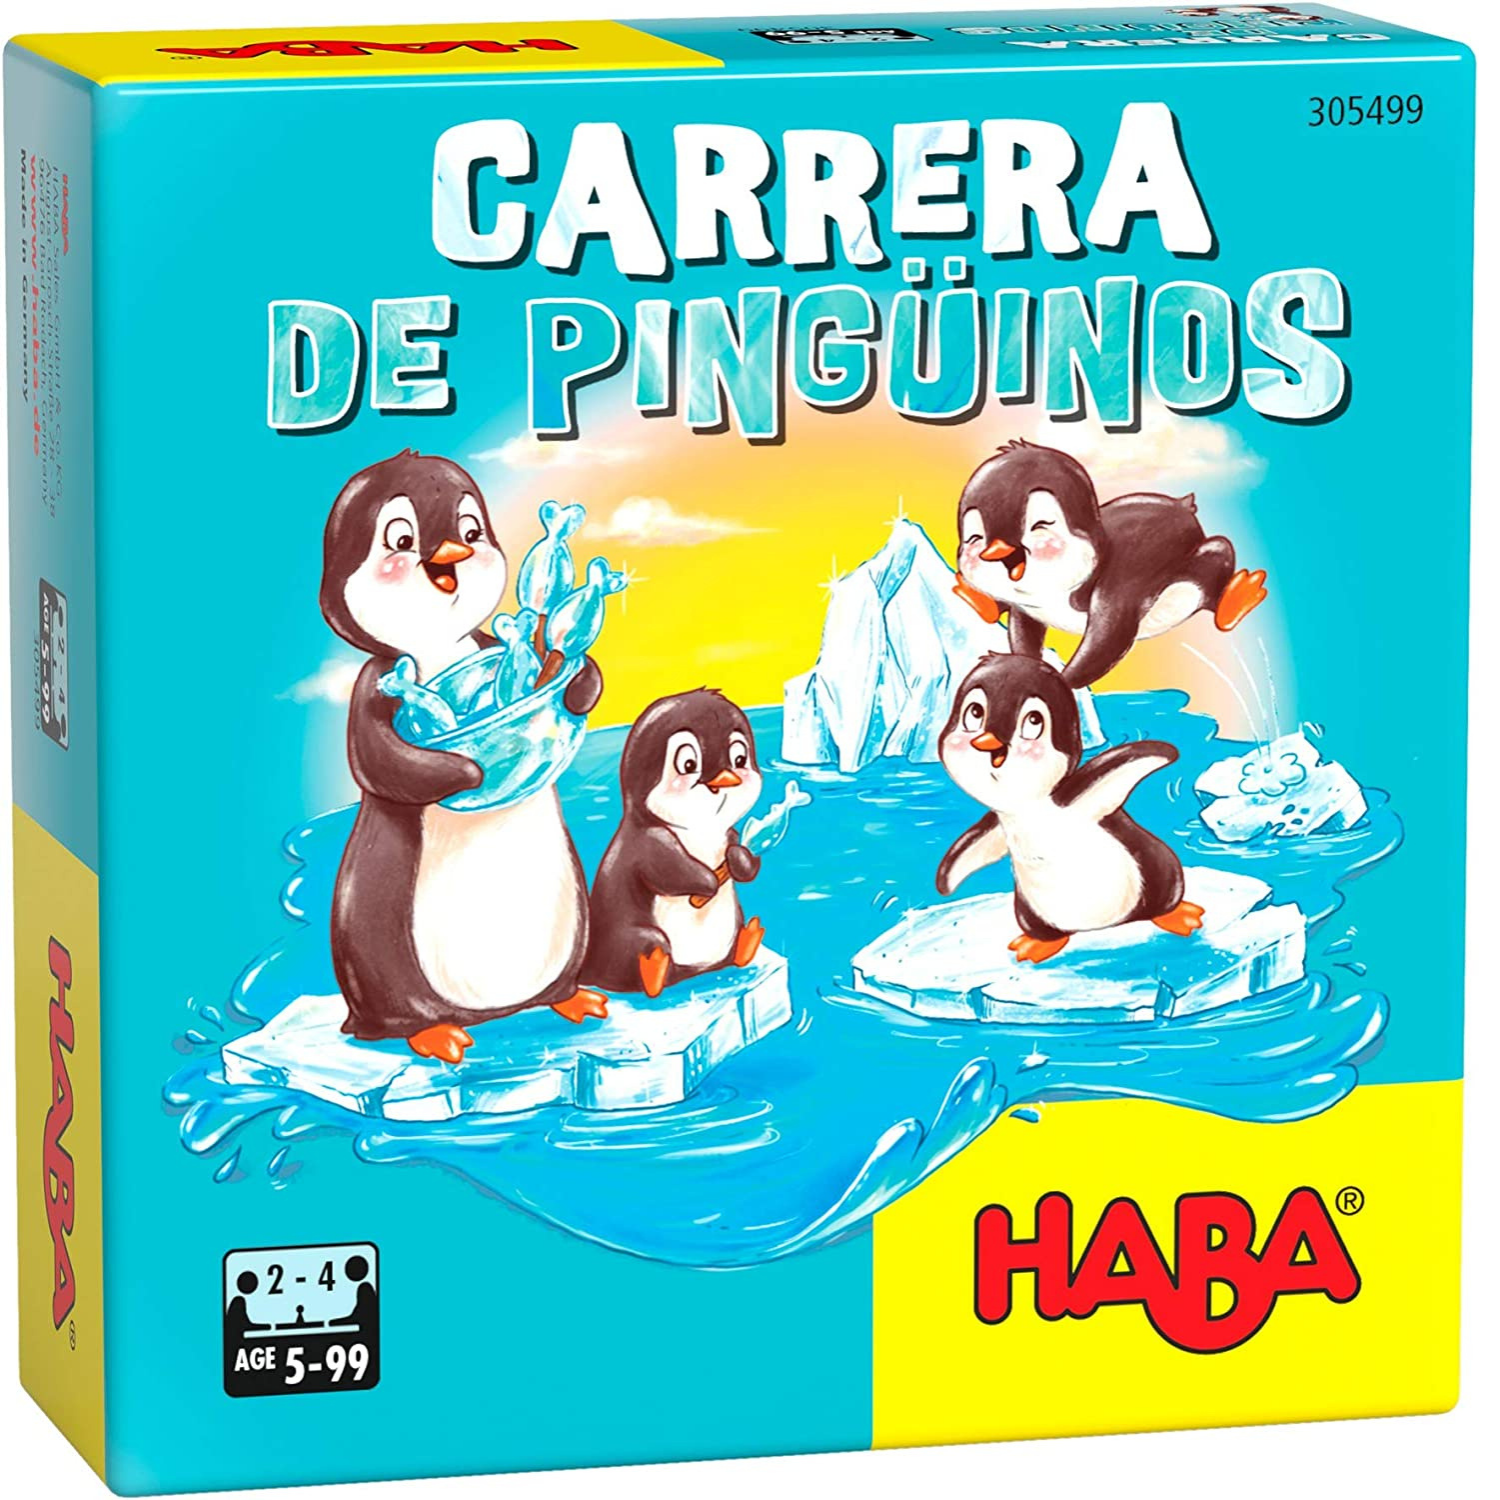 CARRERA DE PINGUINOS